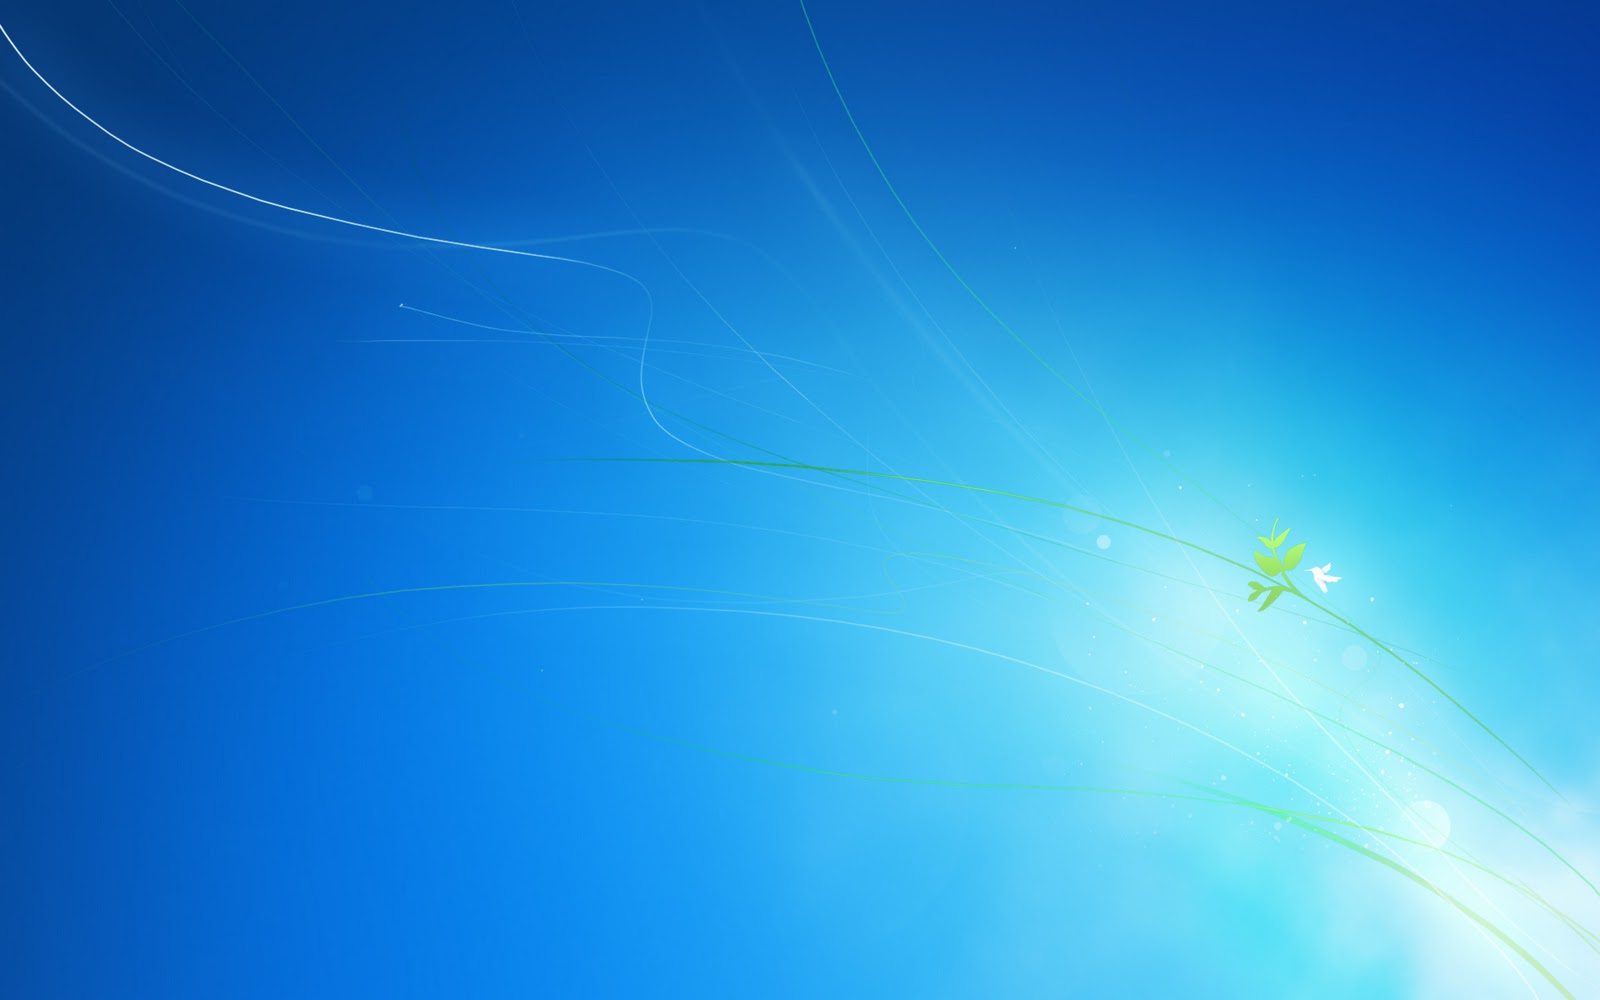  Official Windows 8 Developer Preview Wallpapers Pack Tech Stuffs 1600x1000